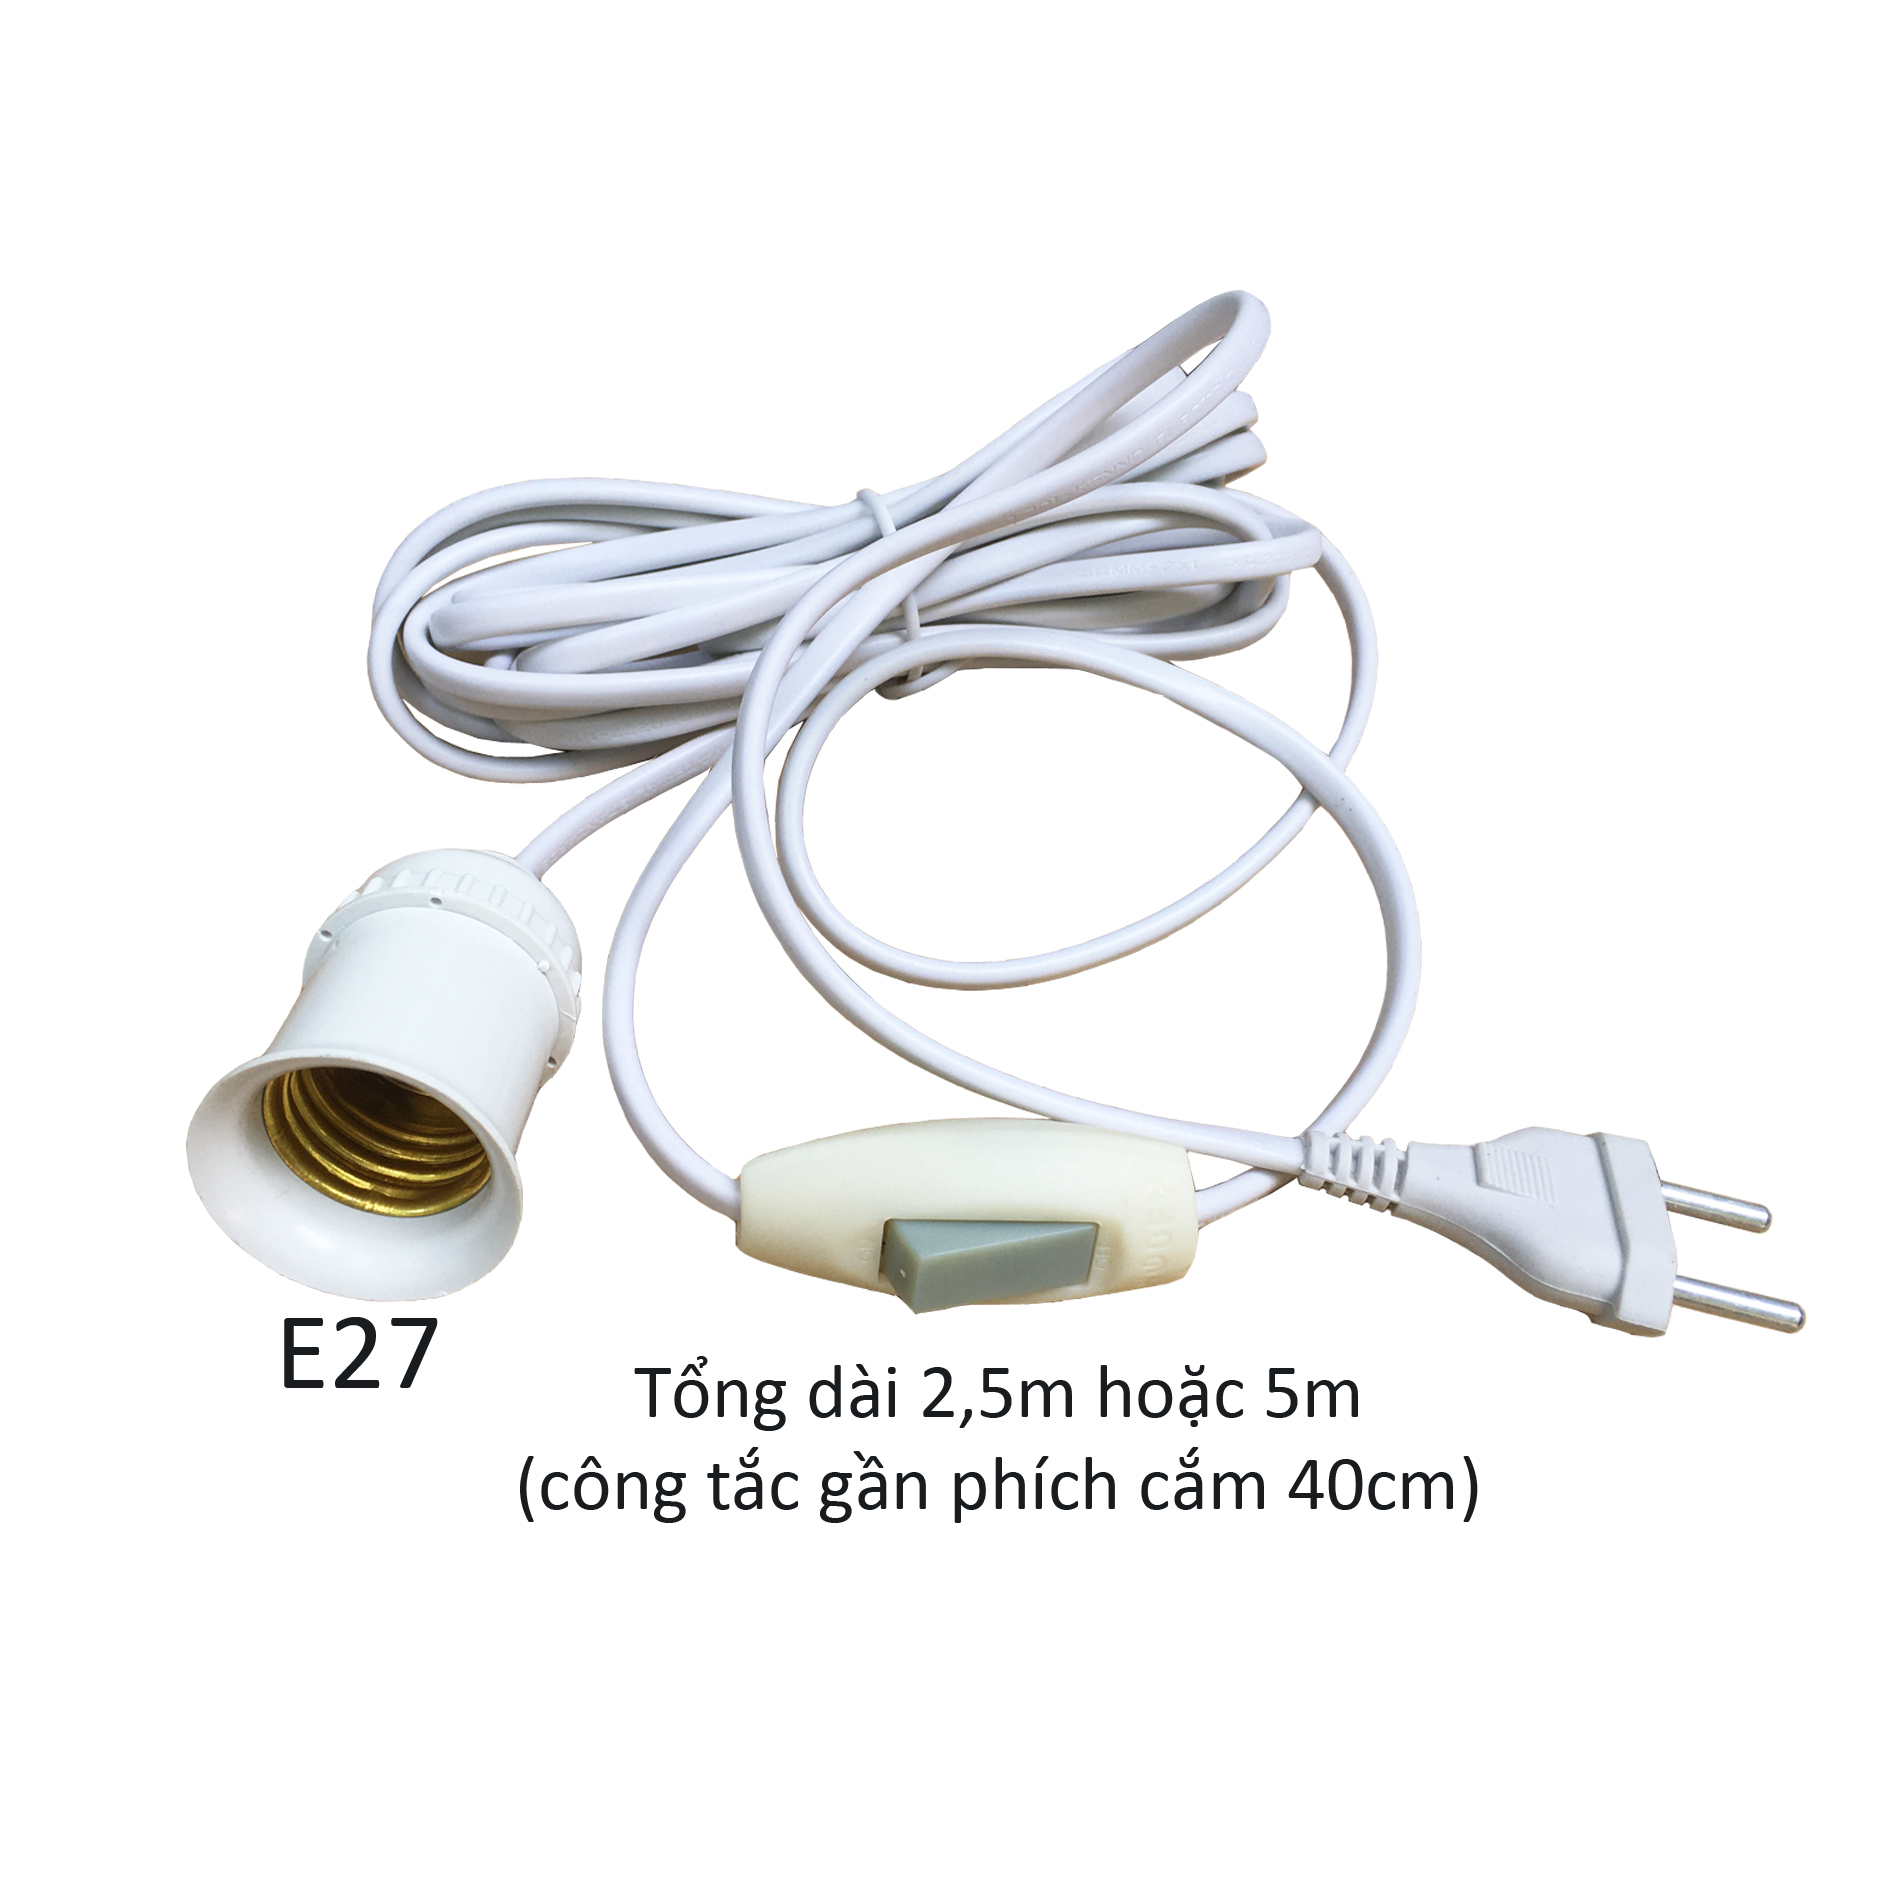 Đui chuôi đèn E27 liền dây điện có công tắc và phích cắm dài 2,5m 5m đuôi xoáy fi27mm Posson...